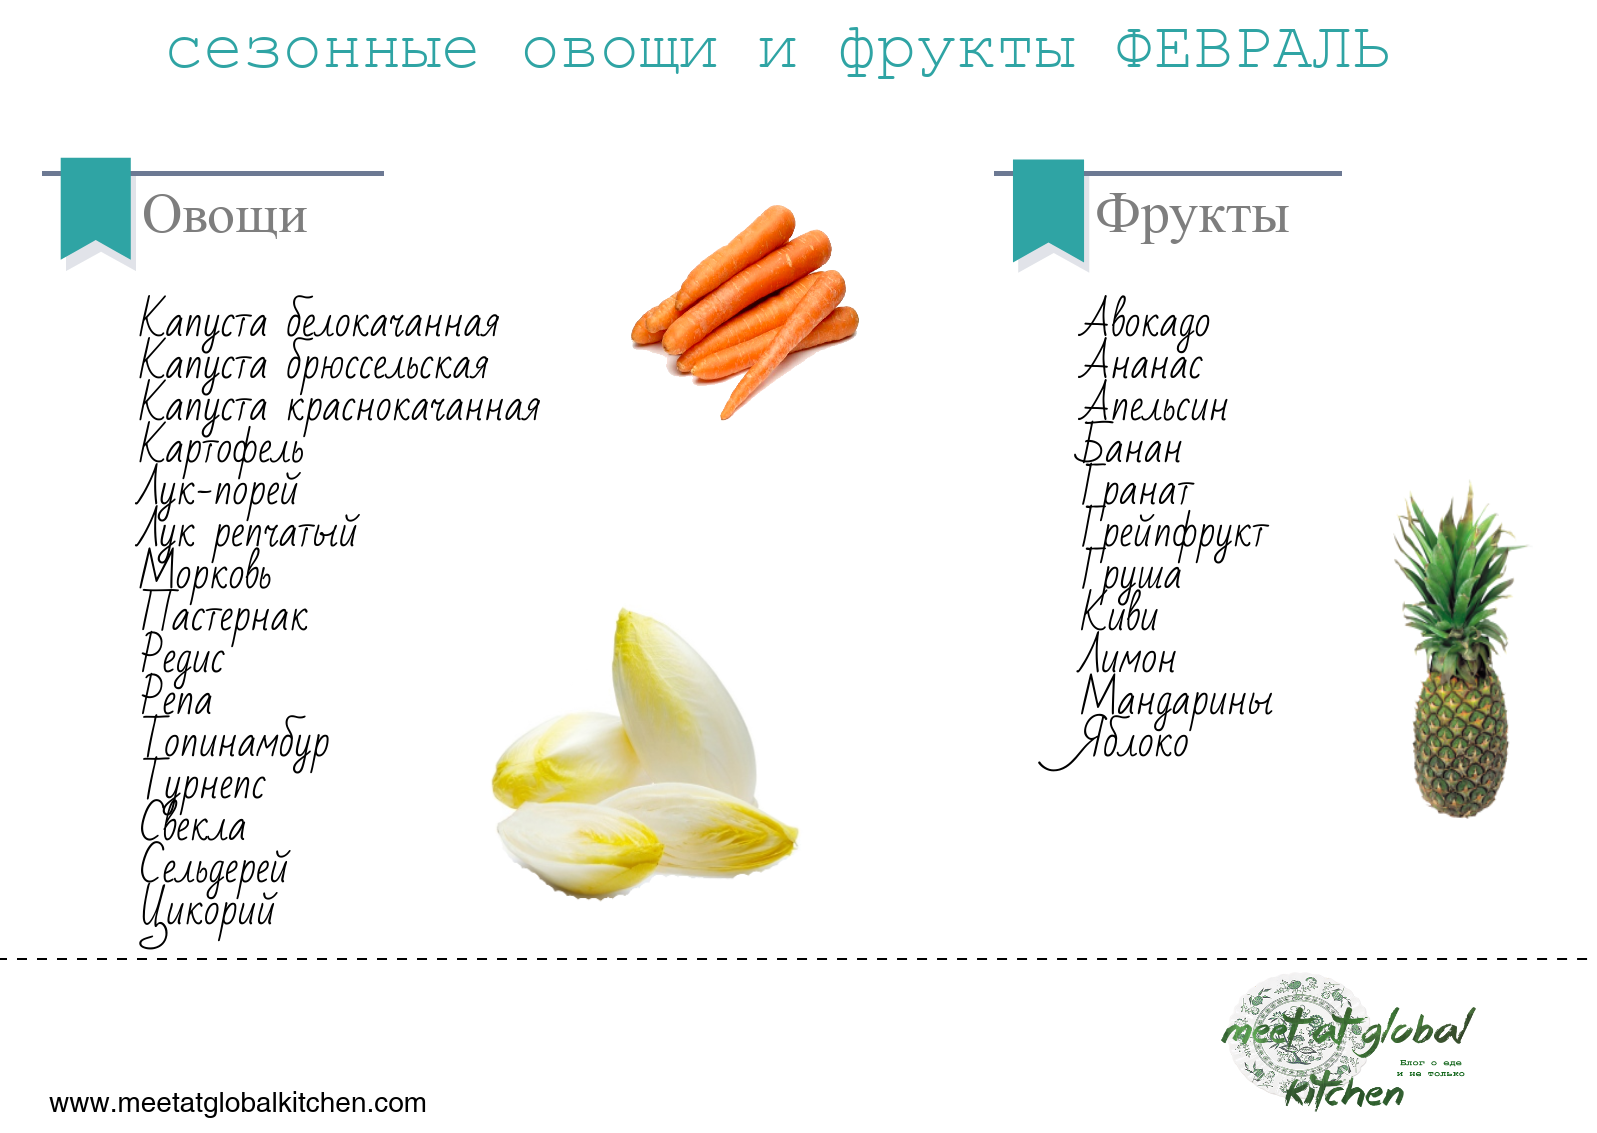 Сезонные овощи и фрукты в России таблица